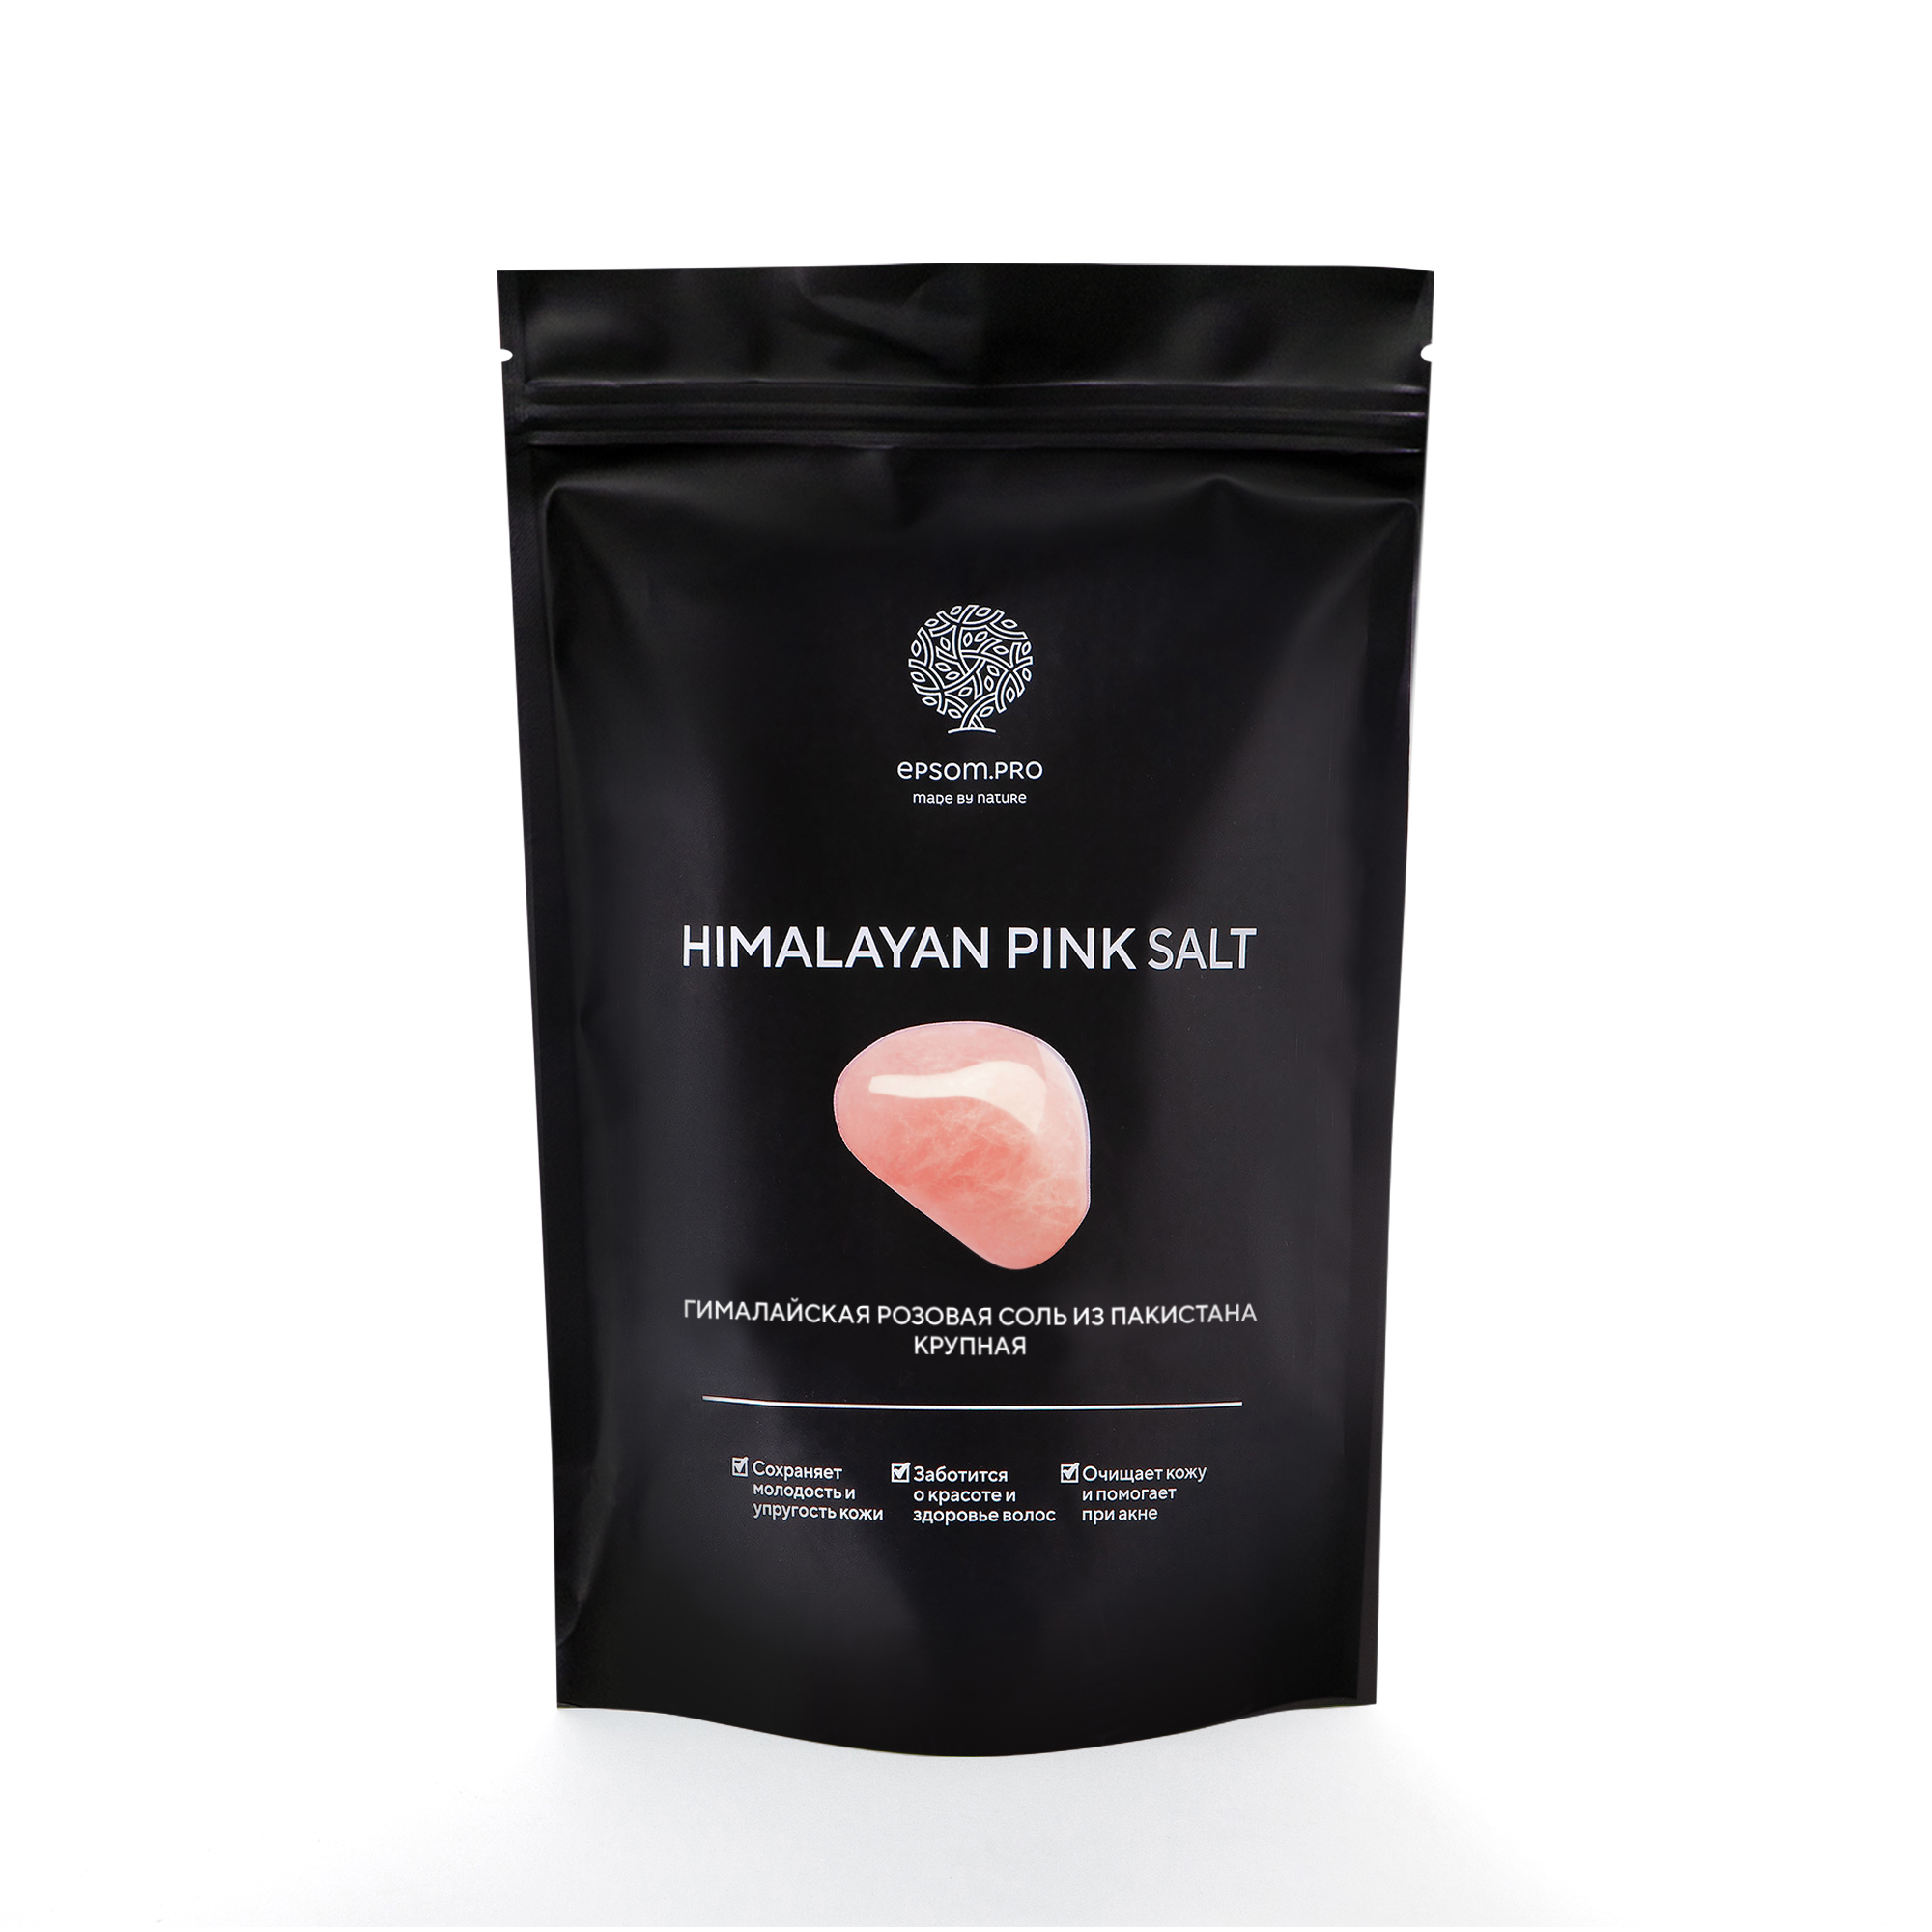 Гималайская розовая соль HYMALAYAN PINK SALT крупная 1 кг lunar lab himalayan pink salt гималайская розовая соль банка 3 кг